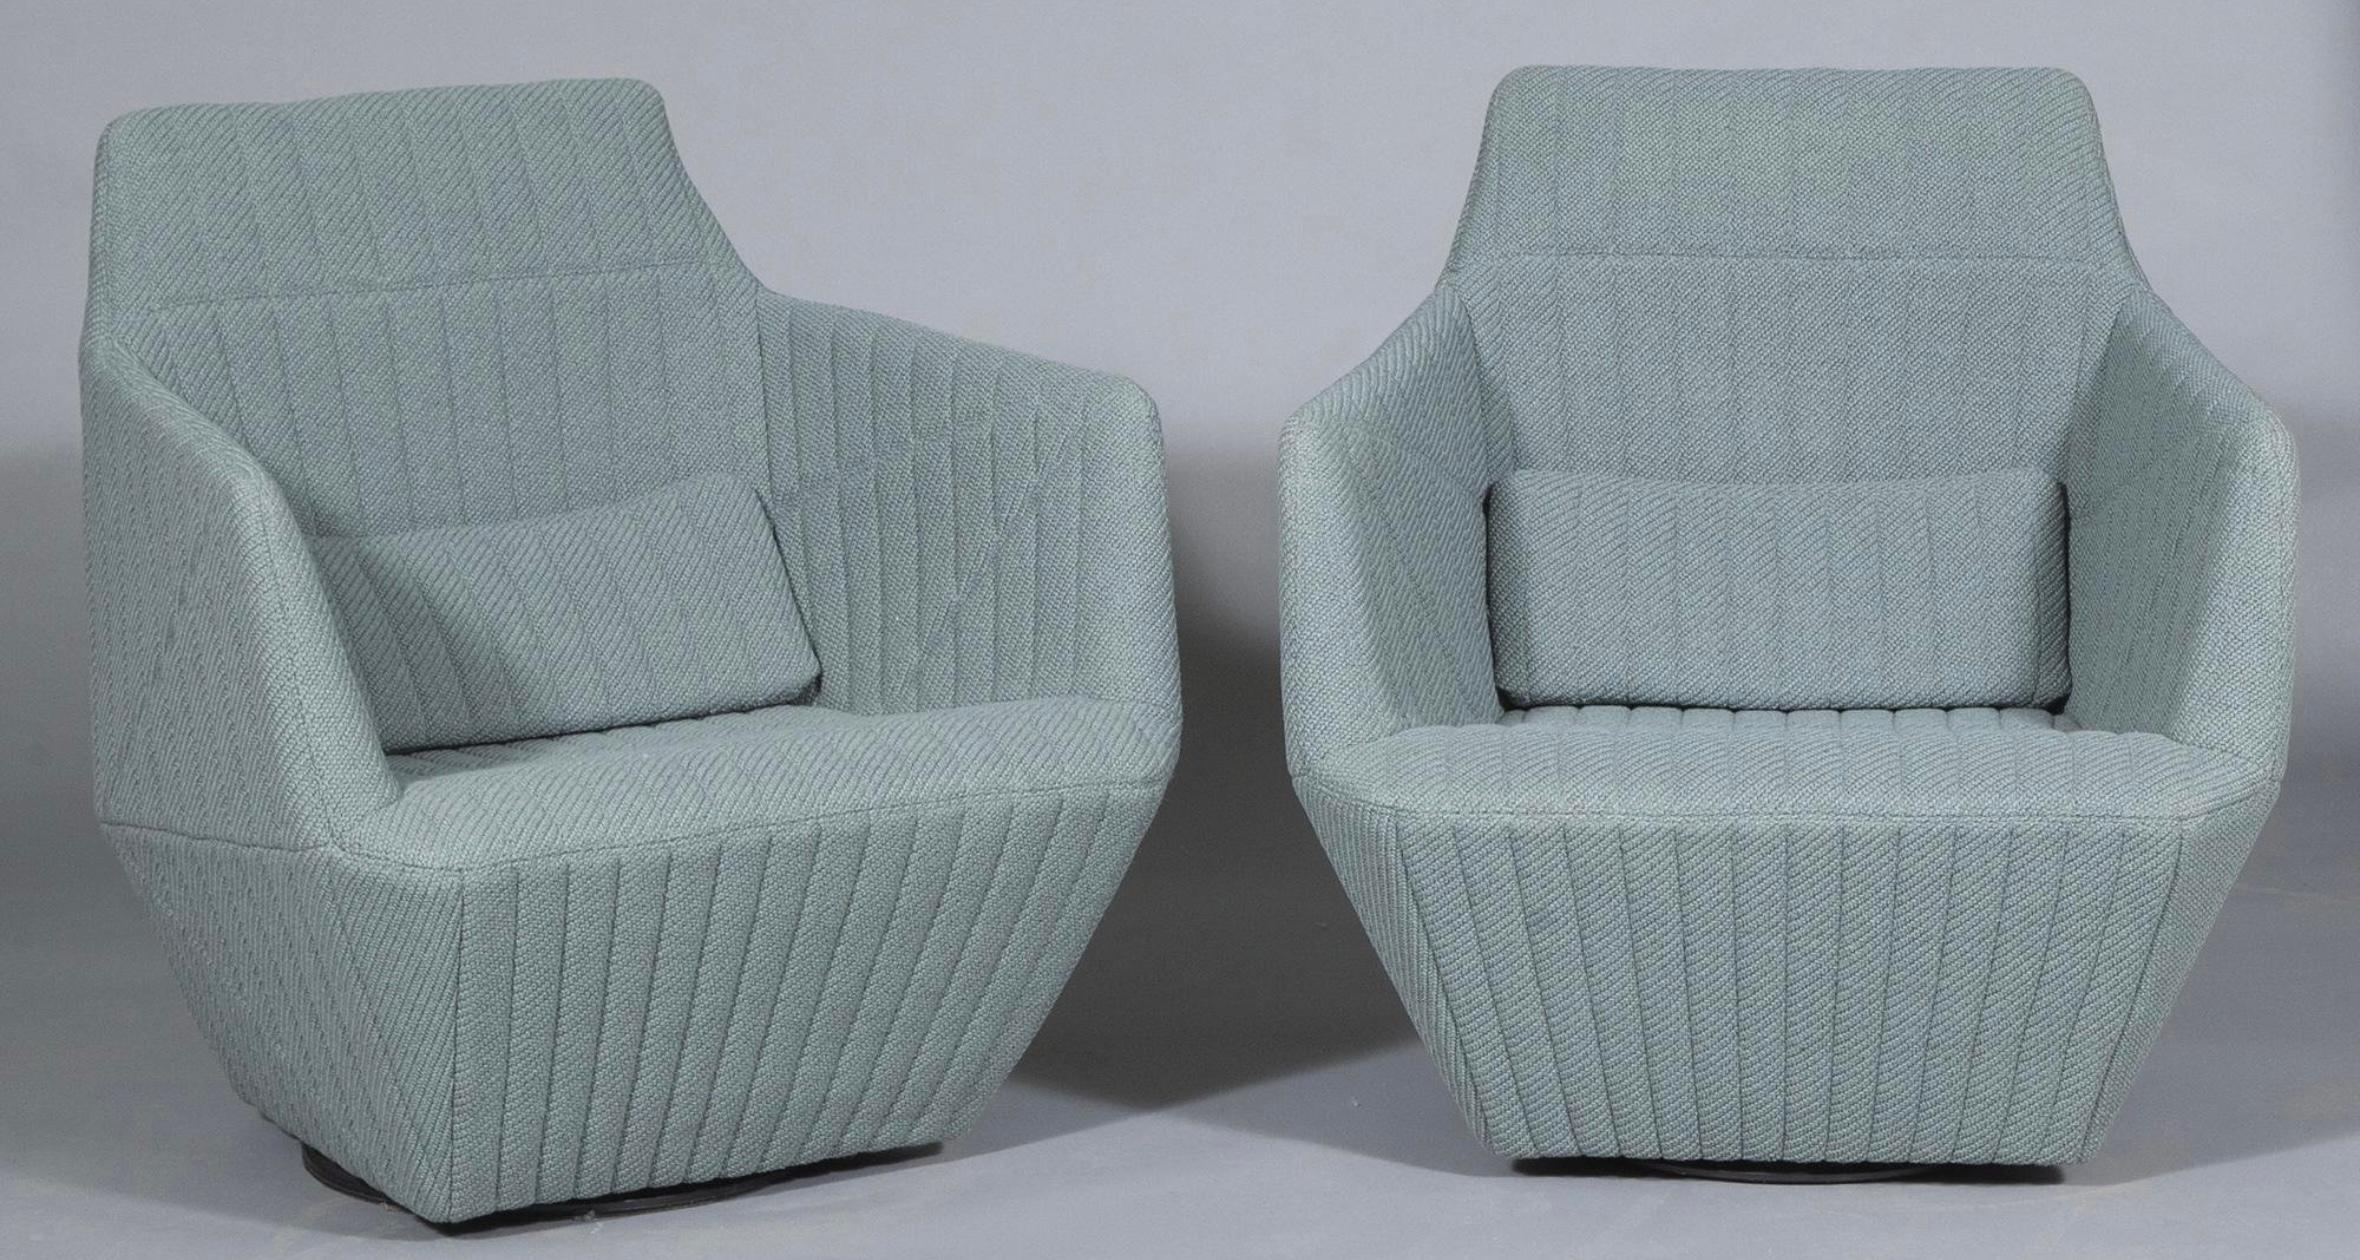 La Portman Gallery a le plaisir de proposer deux chaises pivotantes Facett de R & E Bouroullec pour Ligne Roset.  C'est l'équivalent pour les chaises du travail de Phoebe Philo pour Chloé au début du siècle.   Conçus en 2000, ils commencent